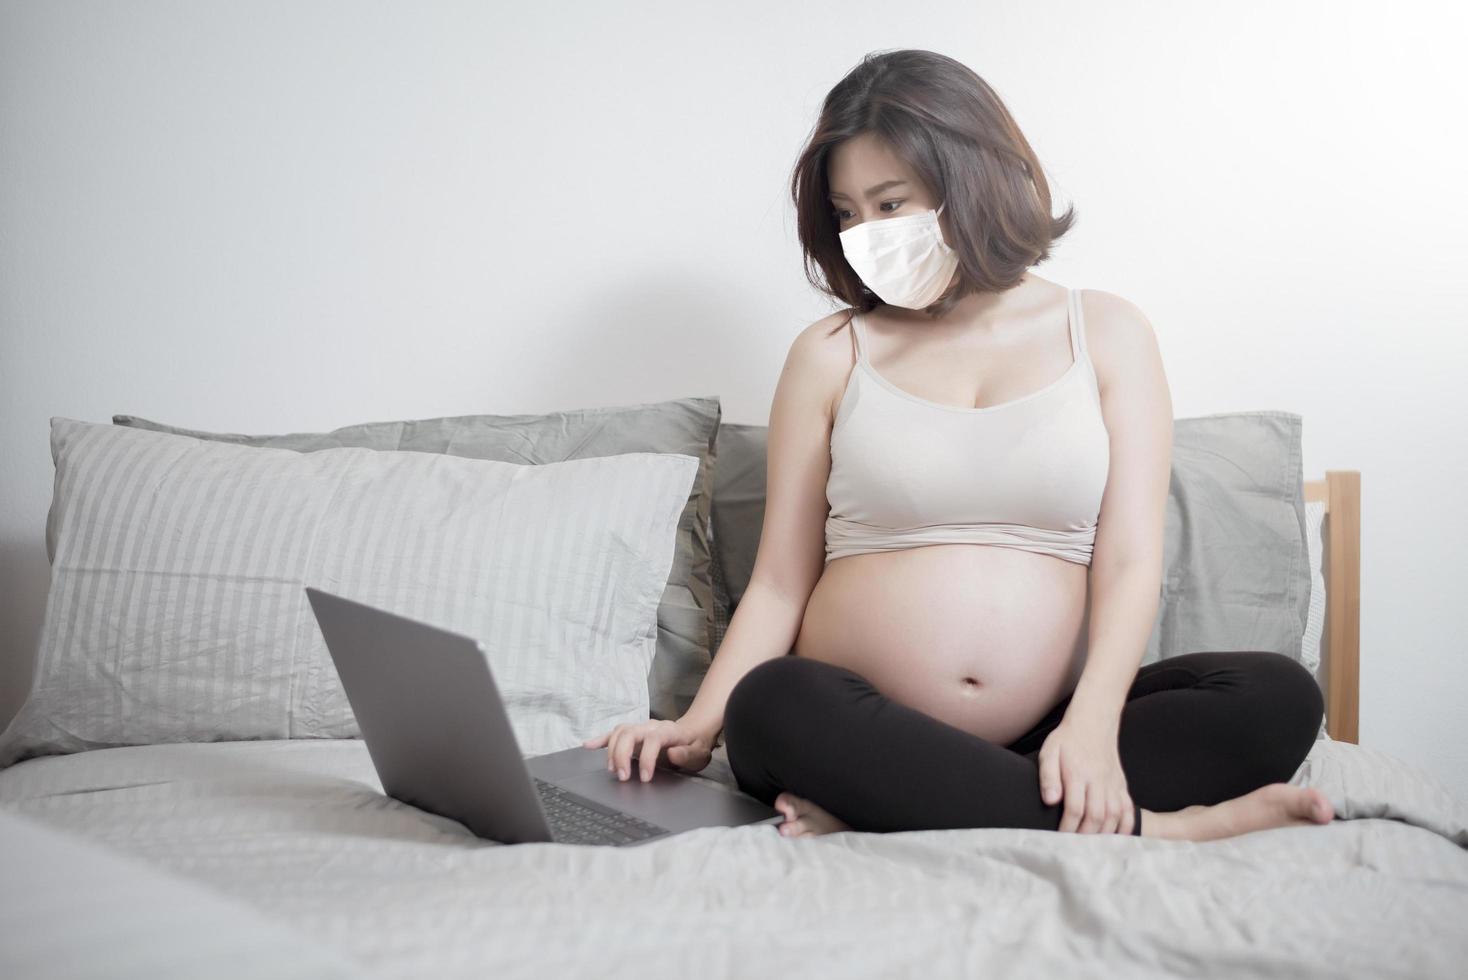 belle femme enceinte asiatique porte un masque de protection dans sa maison, concept de protection contre les coronavirus photo